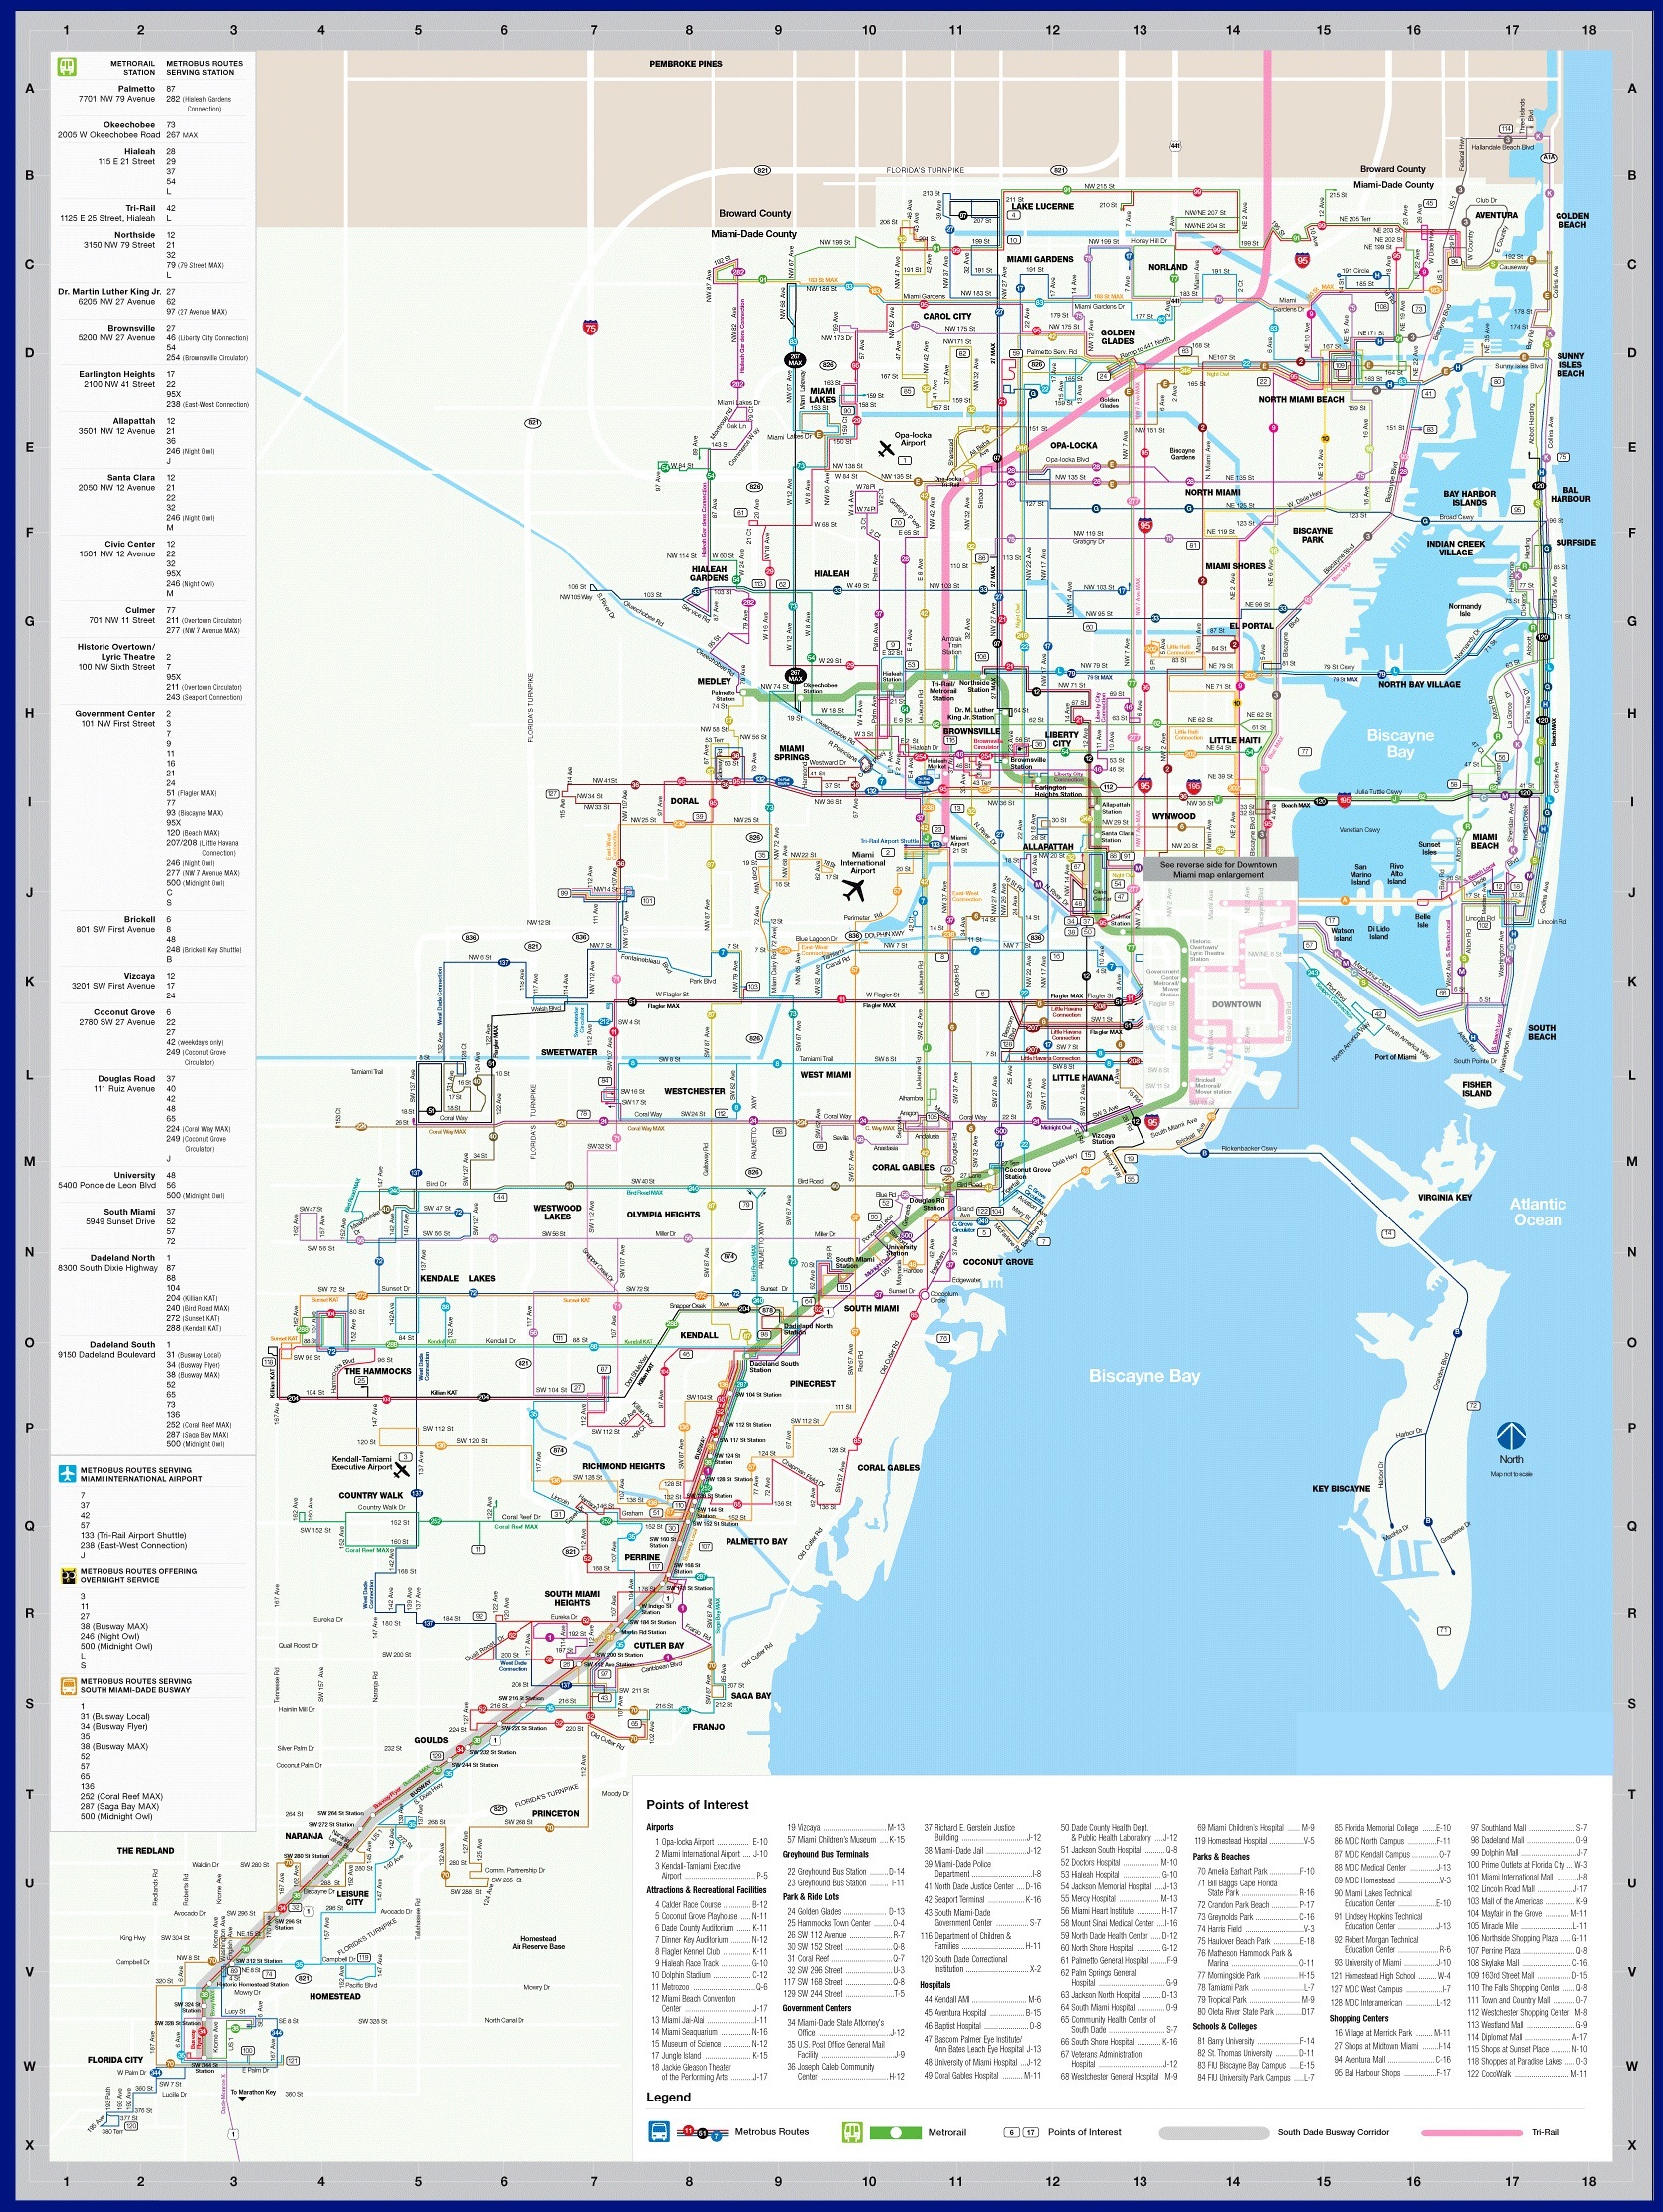 Карта Майами, Florida (США) на русском языке, расположение на карте мира сгородами, метро, центра, районов и округов